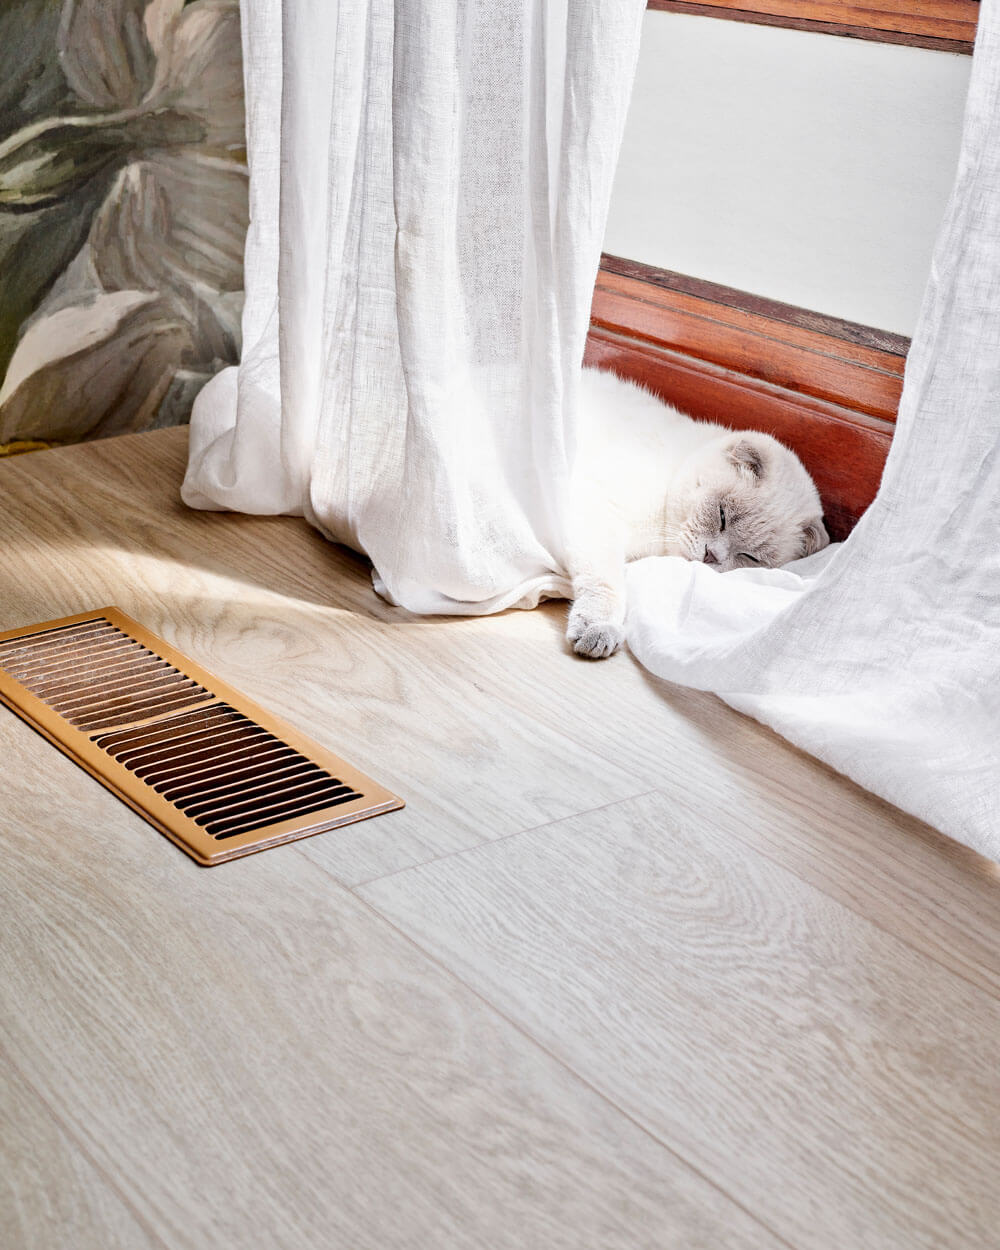 Een witte kat ligt te slapen tegen het raamkozijn op de Moduleo LayRed Laurel Oak 51230 Embossed luxe pvc vloer.